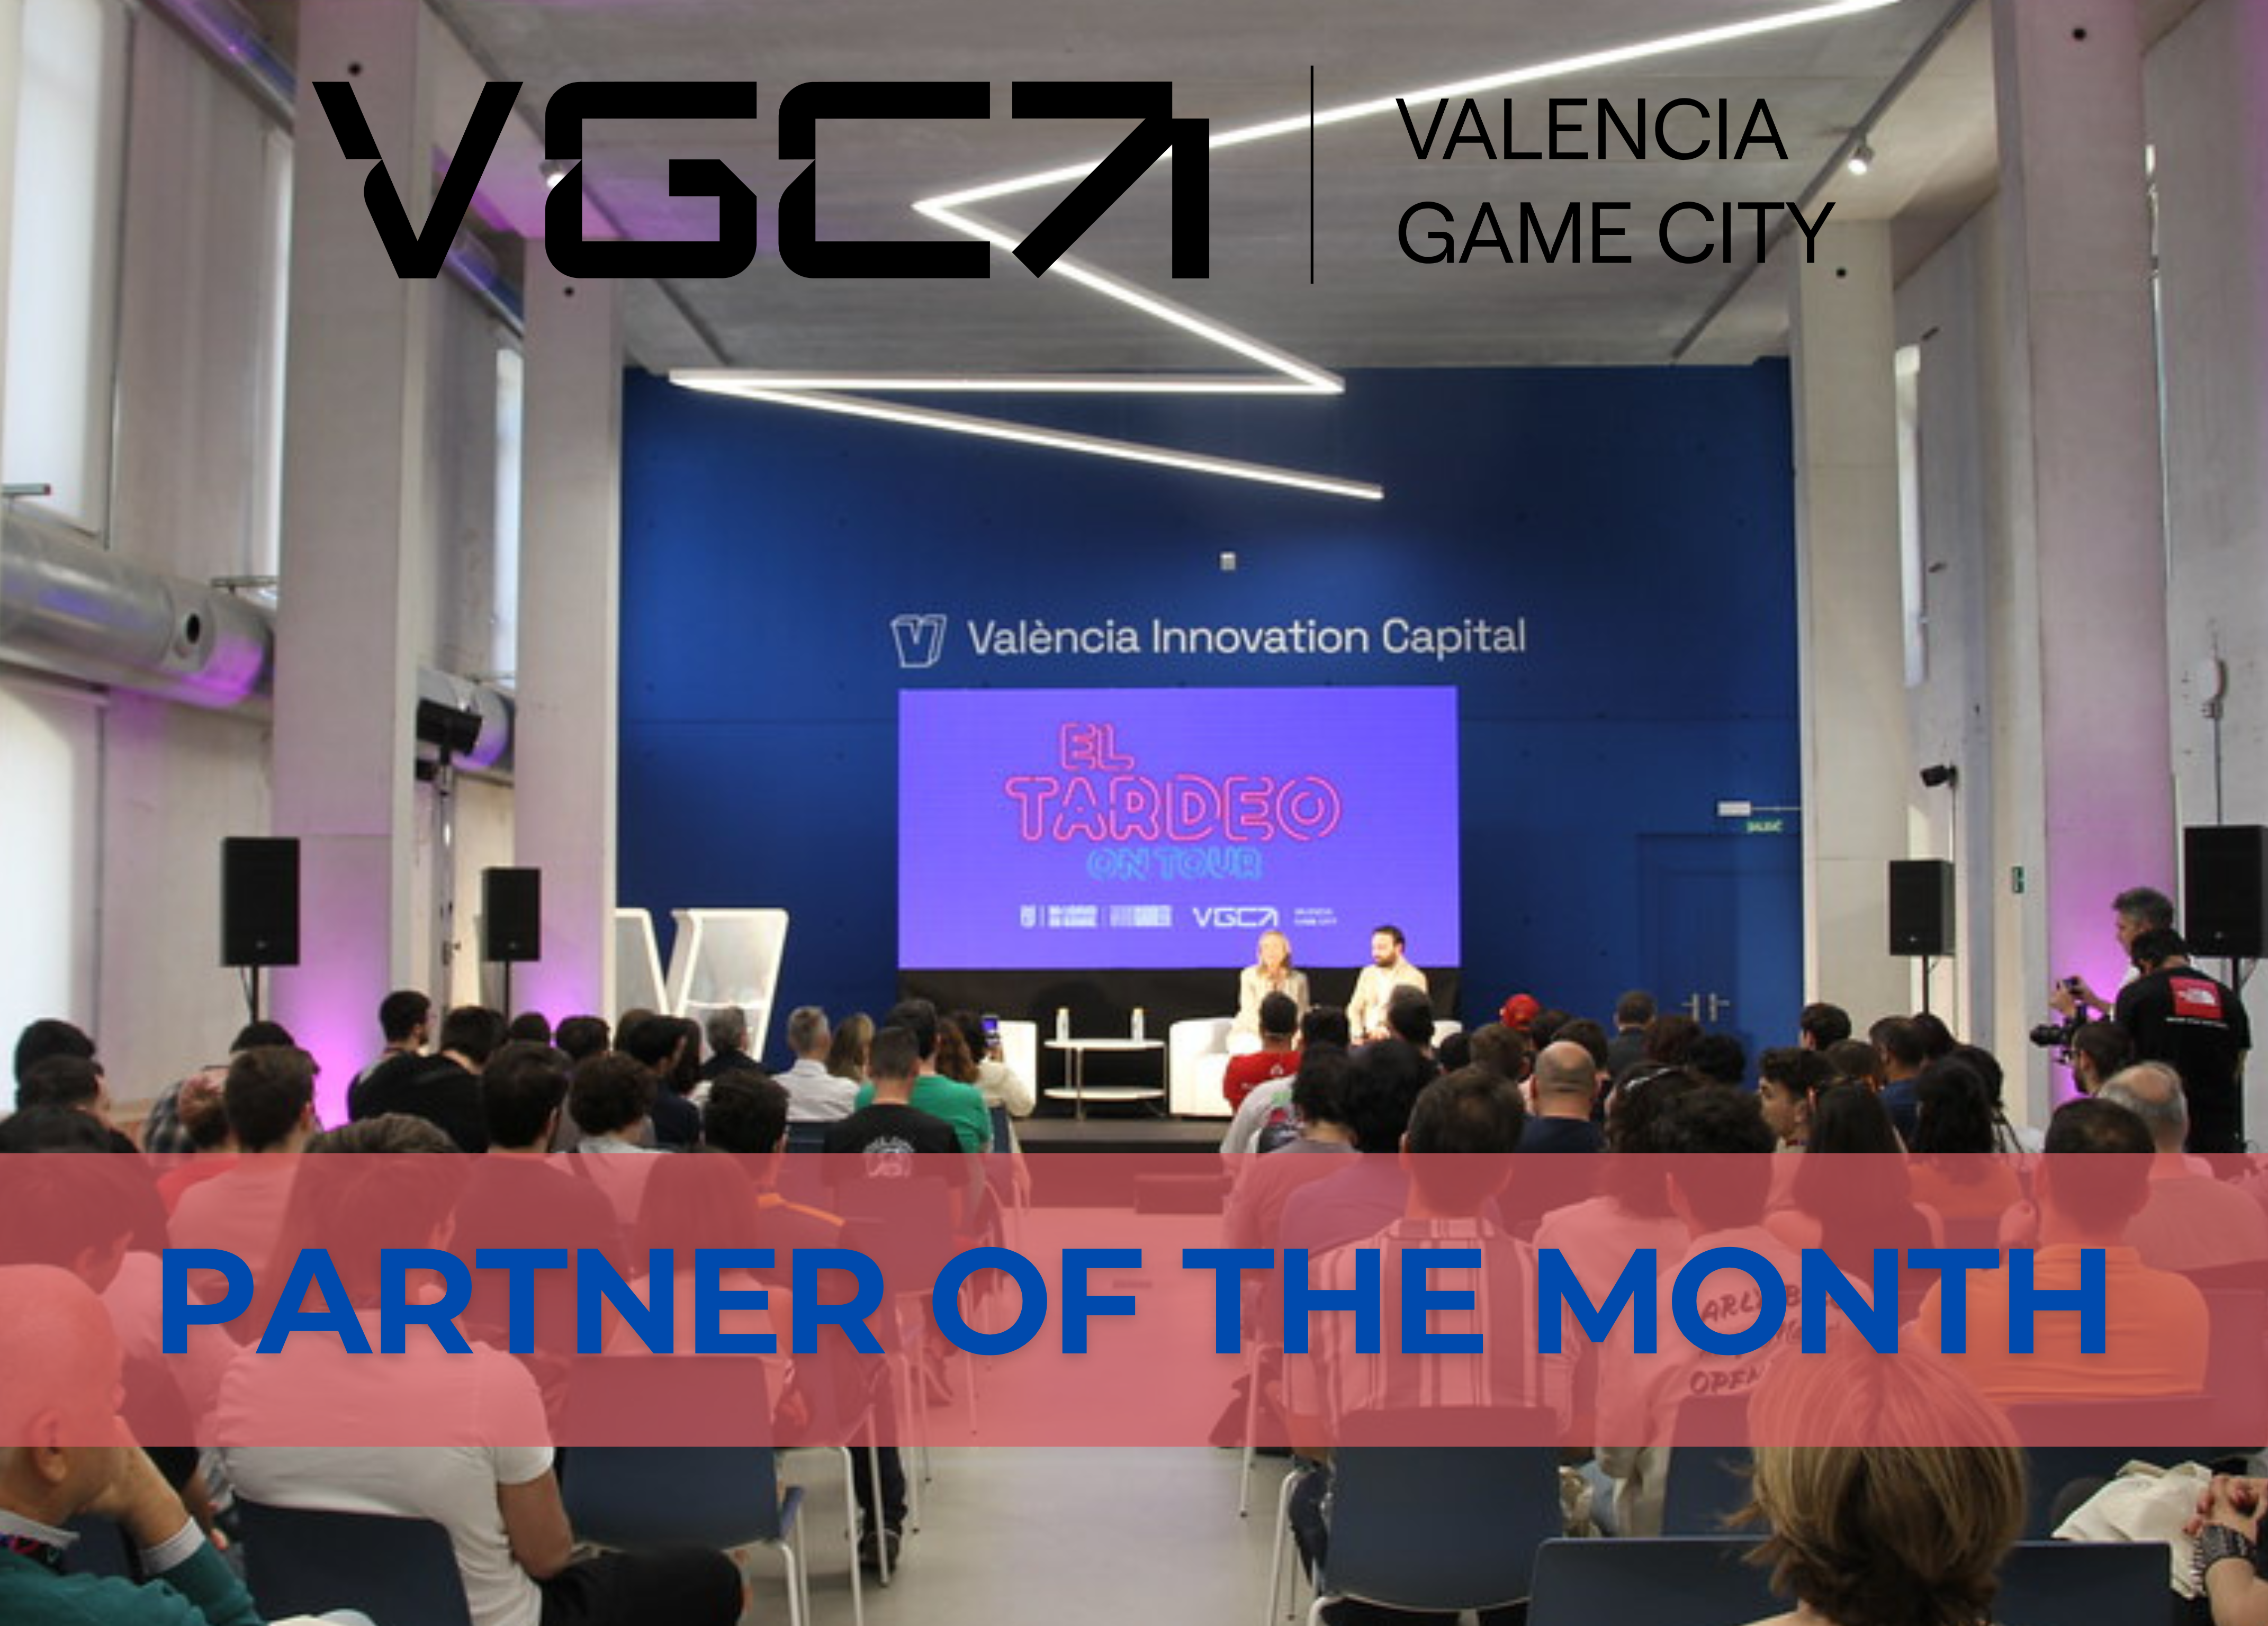 “Valencia Game City posicionará la ciudad como líder del gaming y los esports”